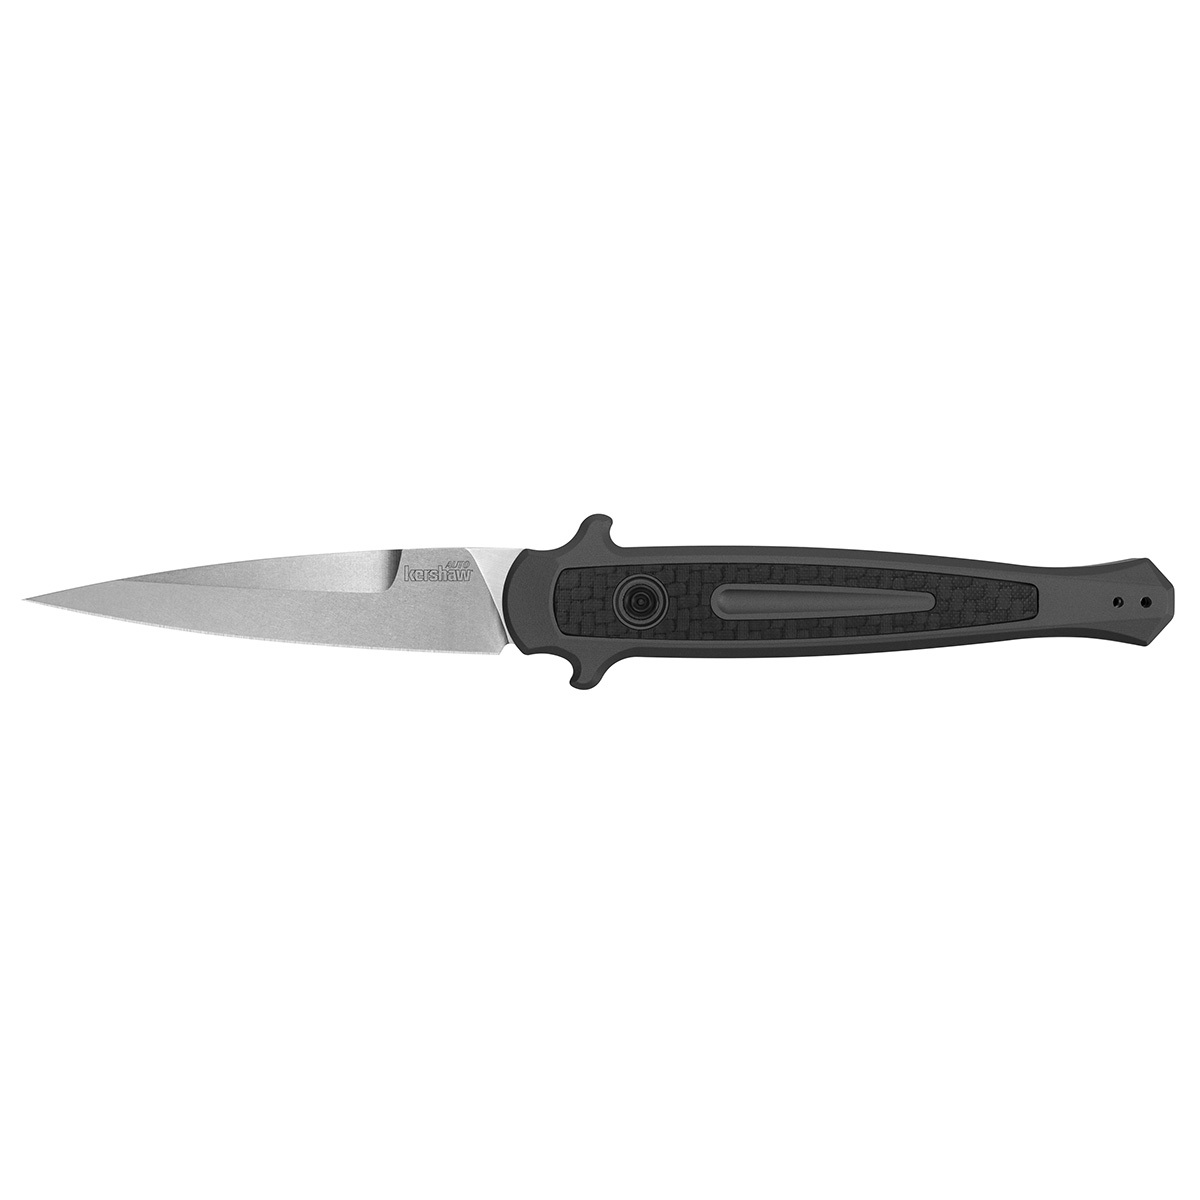 Полуавтоматический складной нож Kershaw Launch 8 Matt Diskin Design, сталь CPM 154